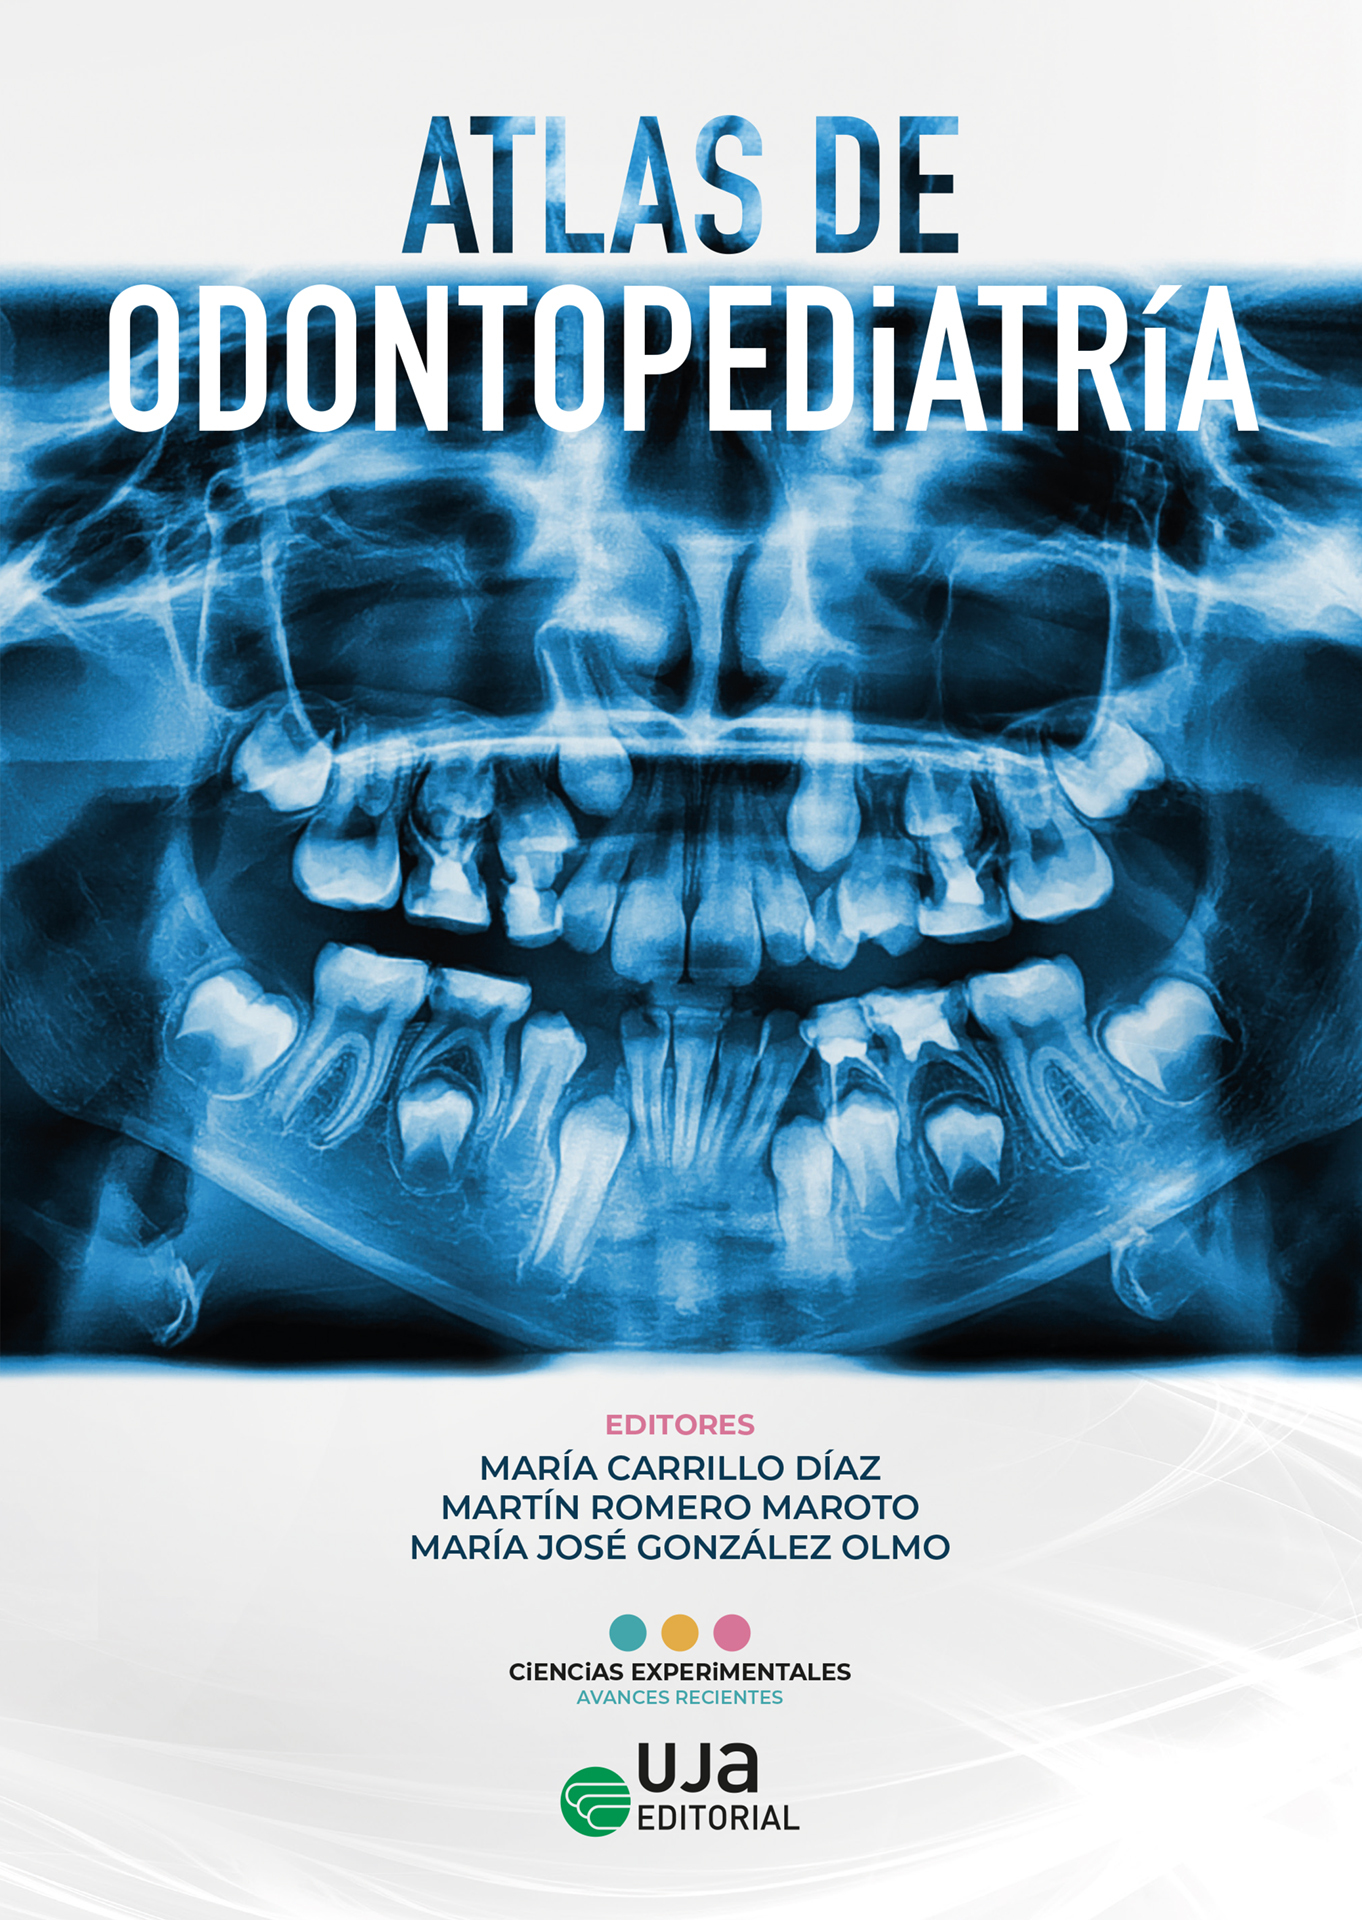 Imagen de portada del libro Atlas de odontopediatría